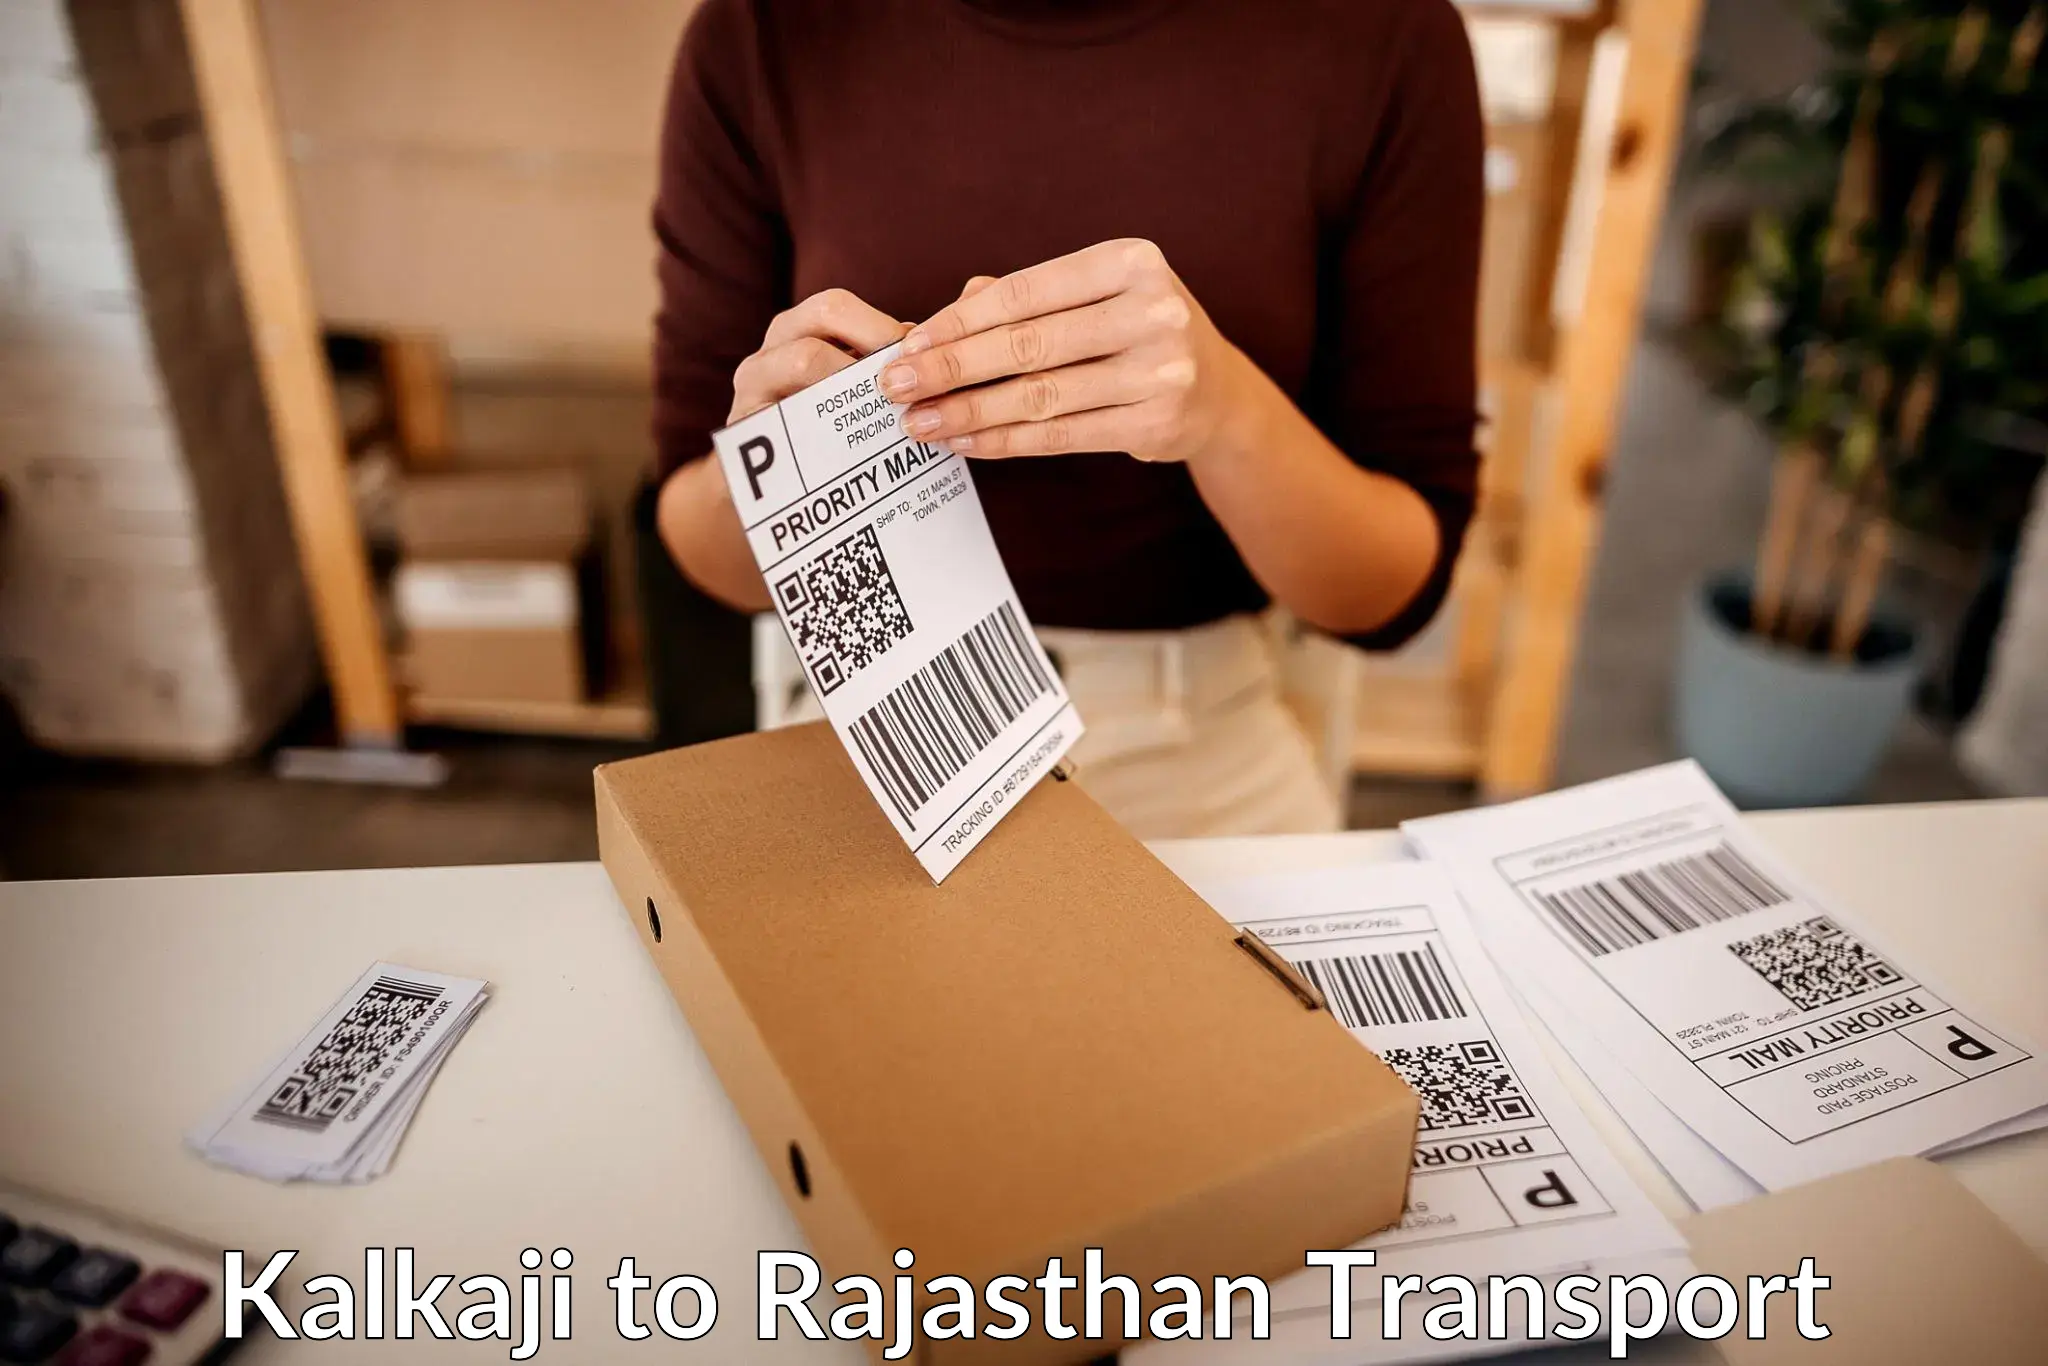 Shipping services Kalkaji to Rajasthan